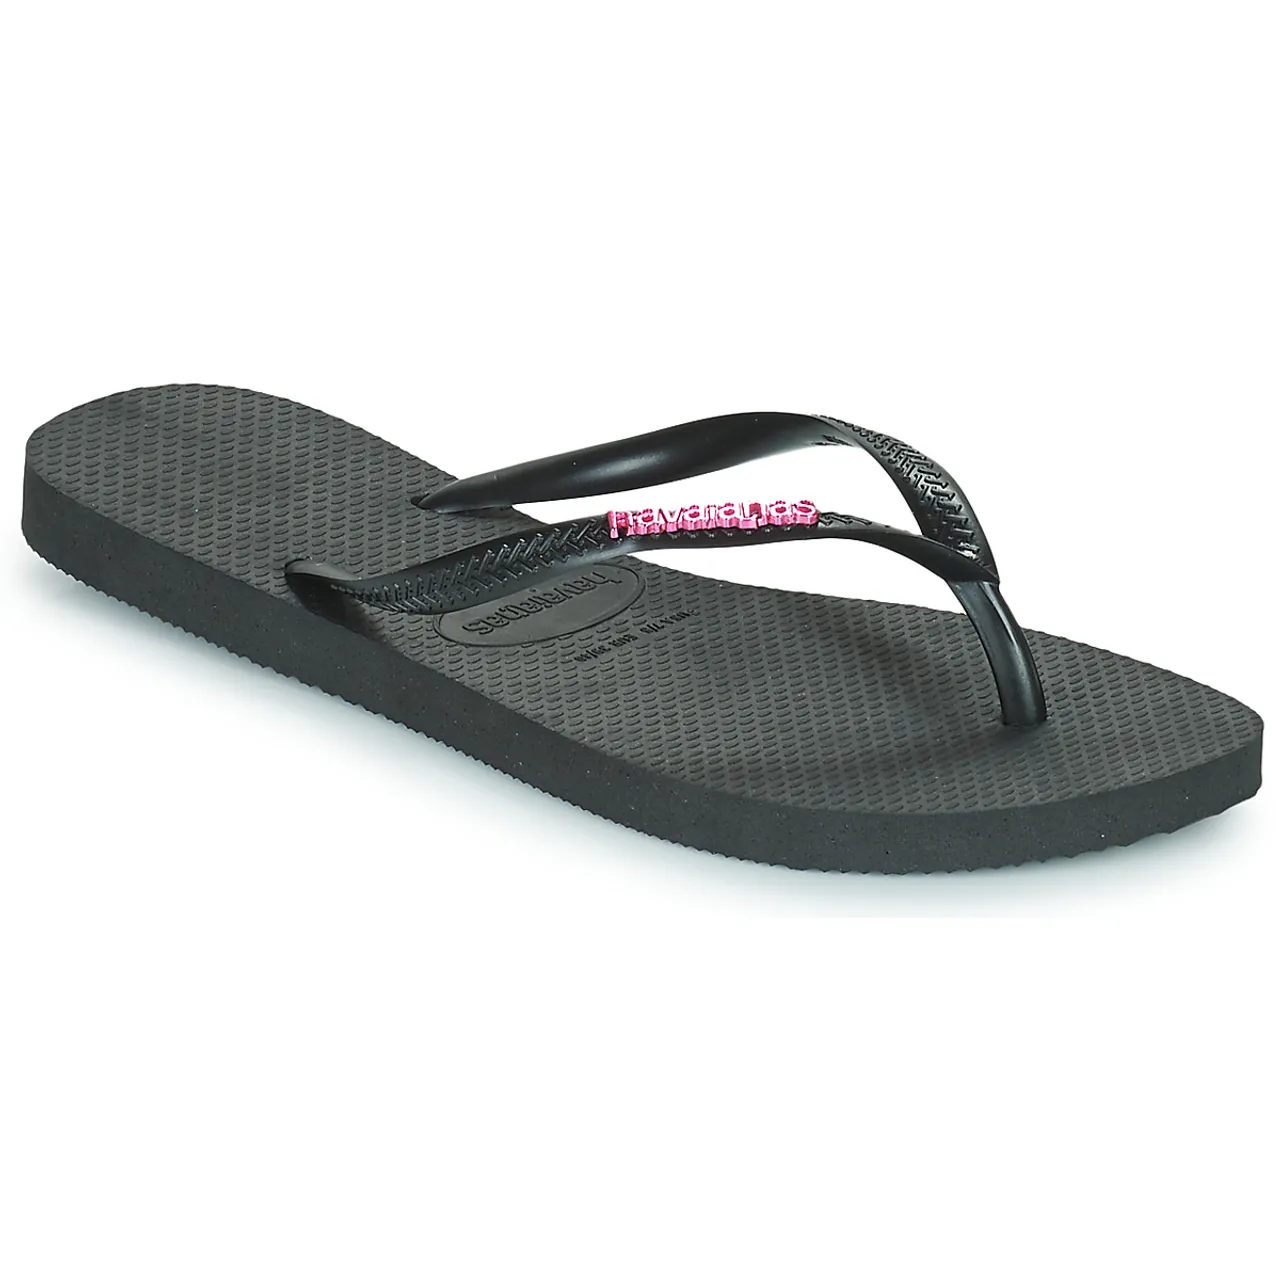 Havaianas  SLIM LOGO METALLIC  women's Flip flops / Sandals (Shoes) in Black